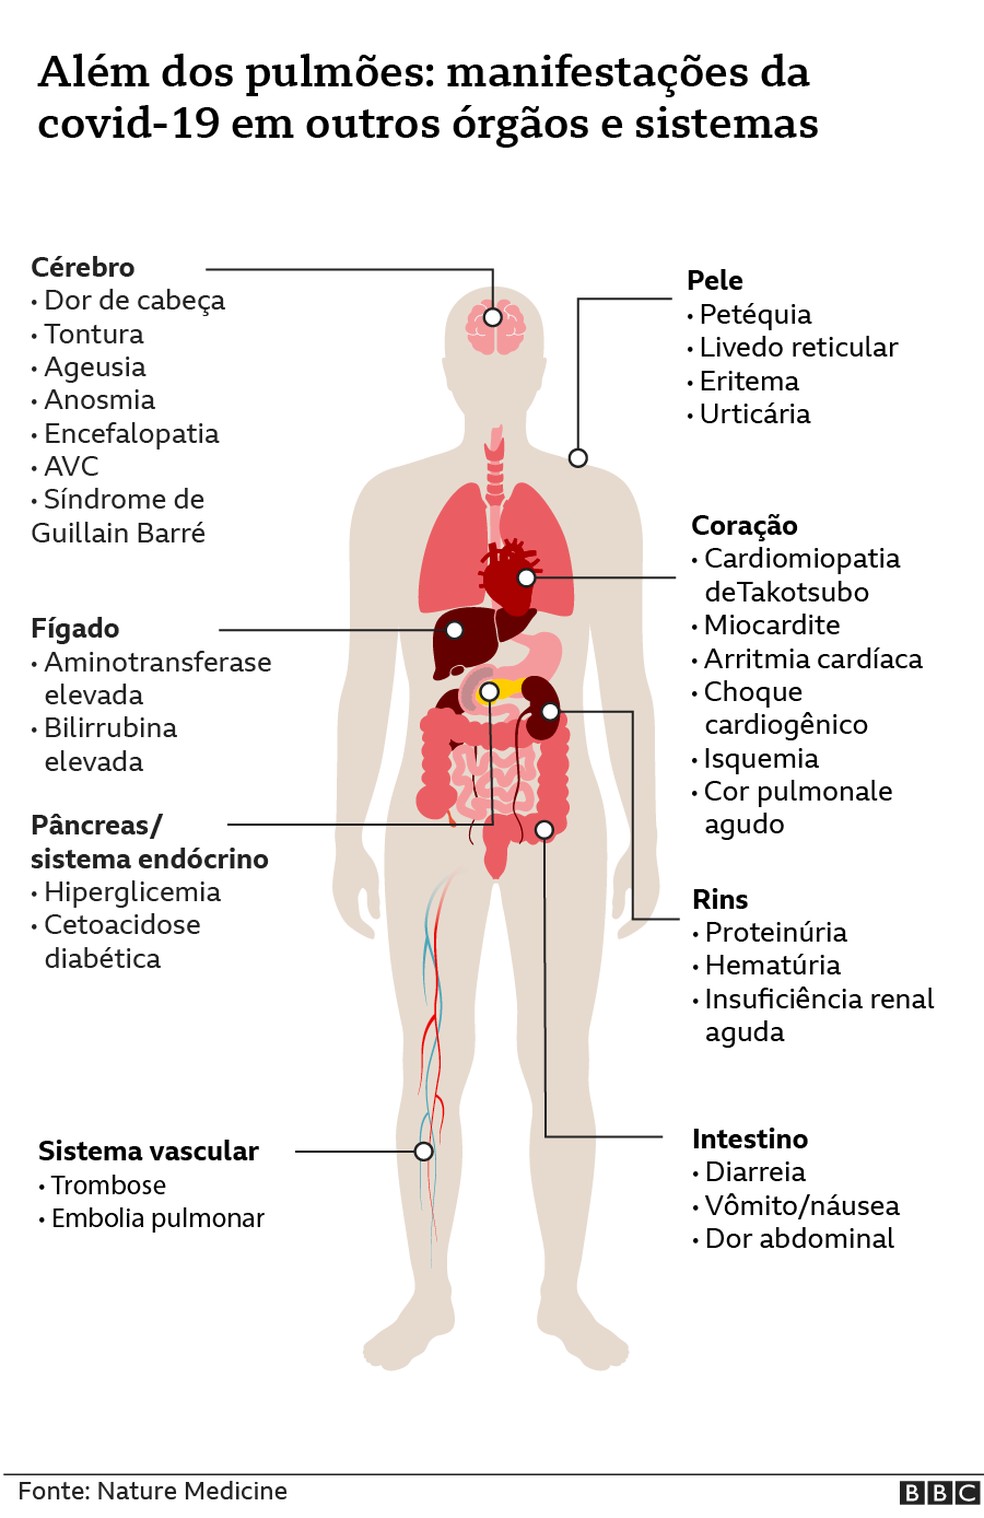 Além dos pulmões, veja manifestação da Covid-19 em outros órgãos e sistemas  — Foto: BBC